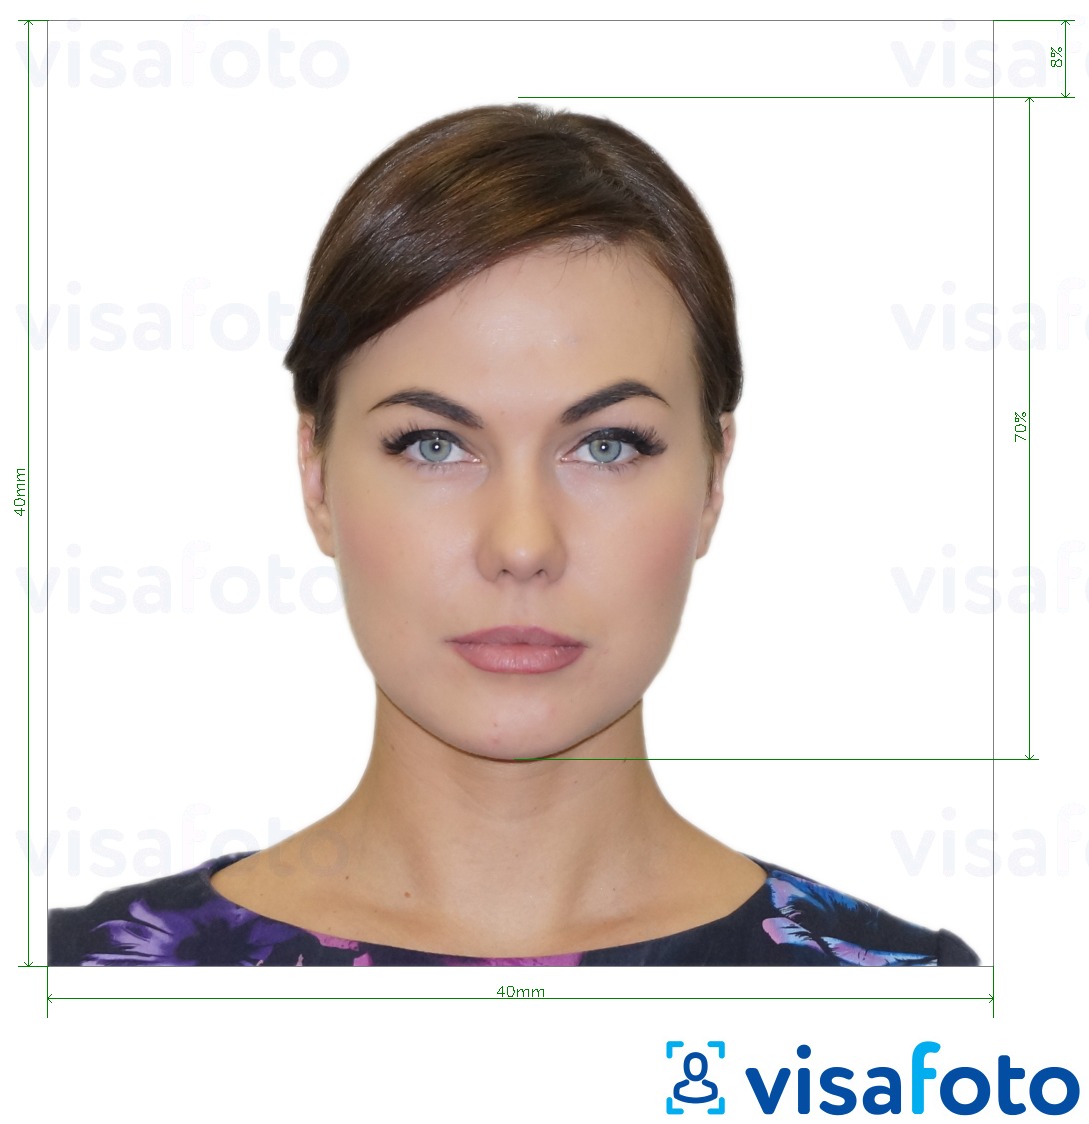 Voorbeeld van foto voor Argentijns visum 4x4 cm (40x40 mm) met exacte maatspecificatie